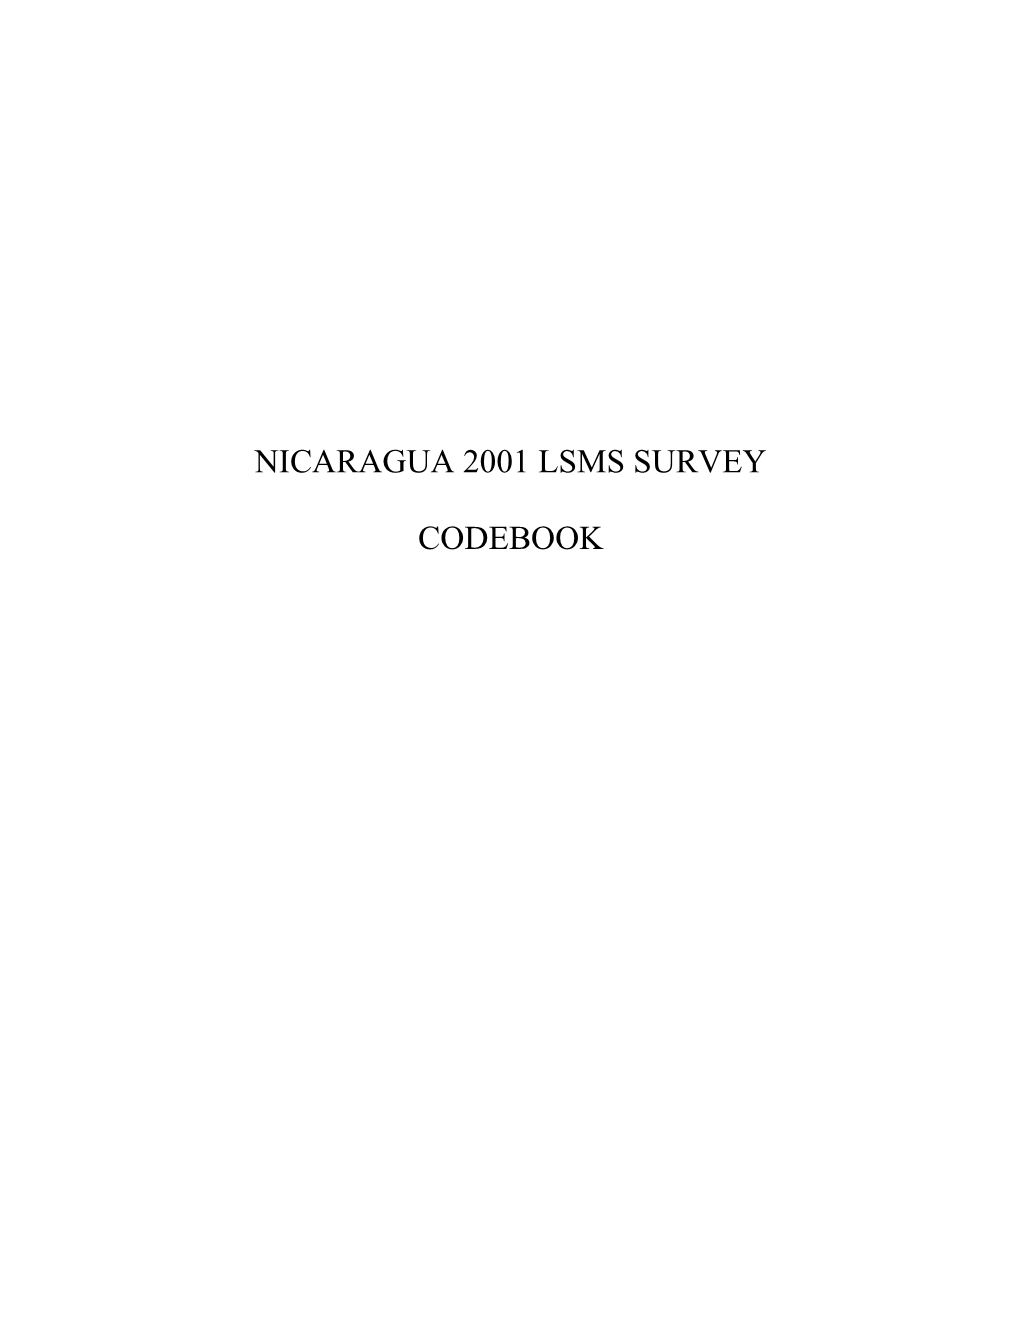 Nicaragua 2001 Lsms Survey Codebook